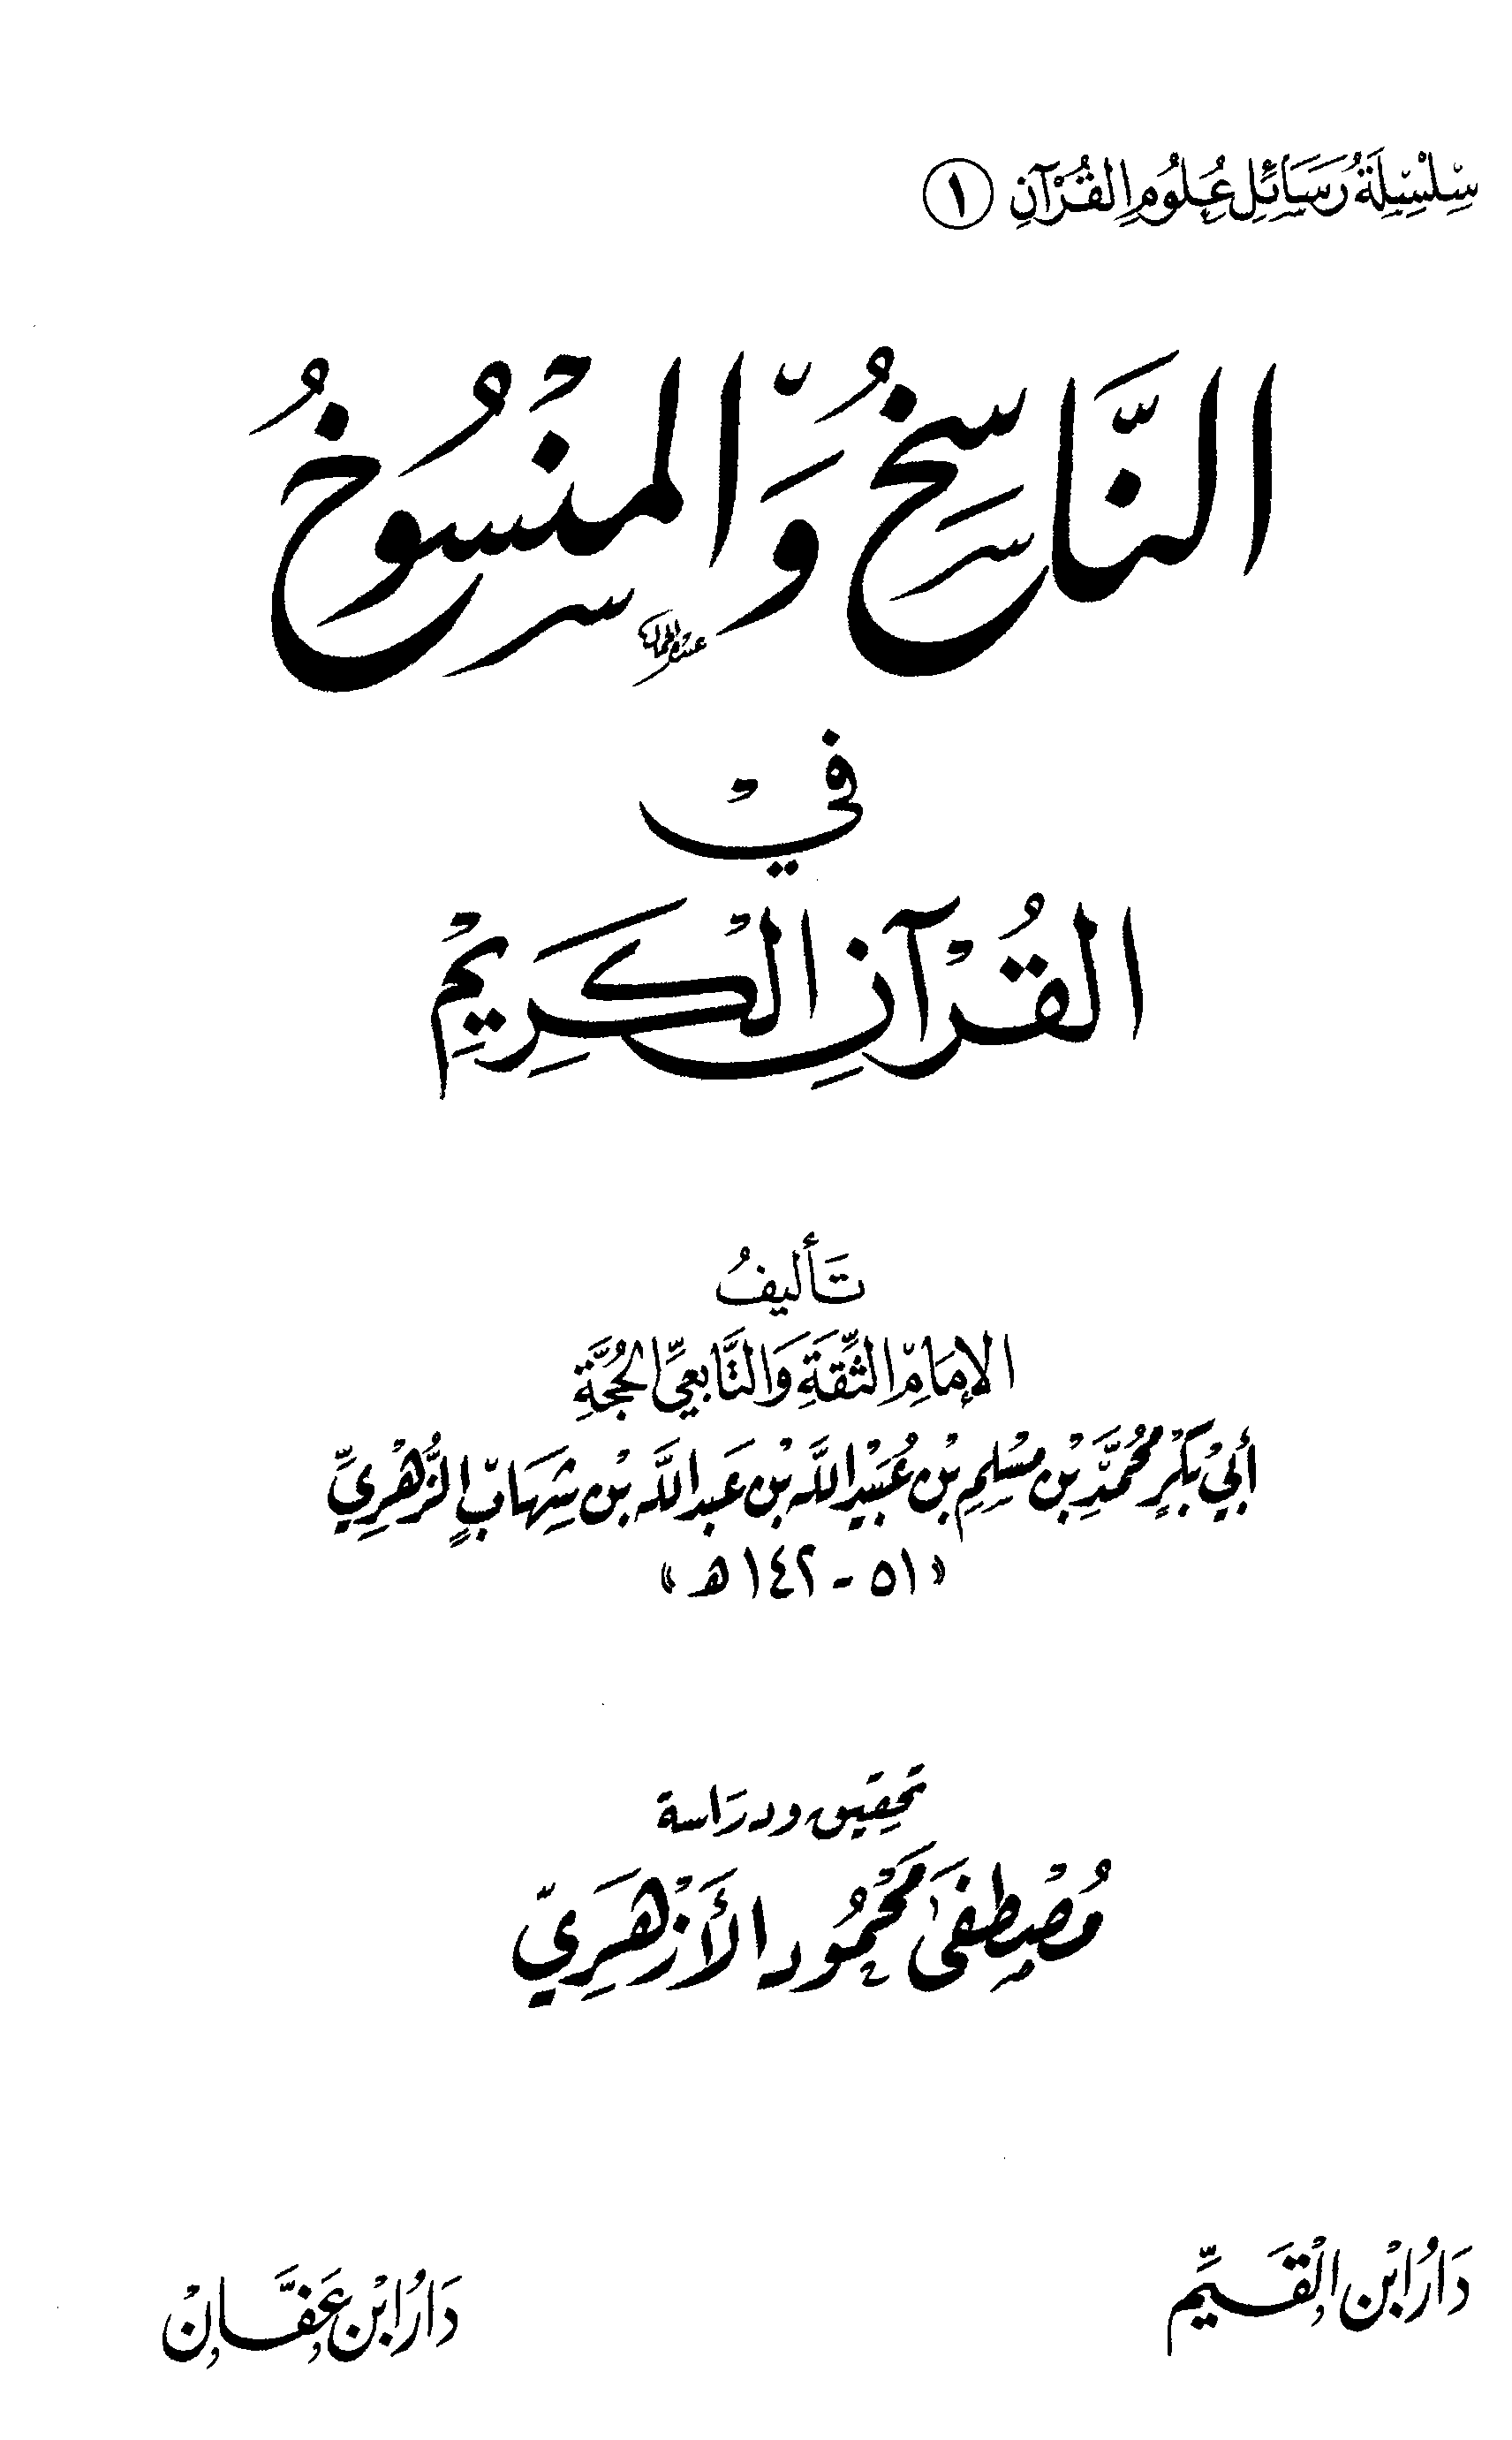  الناسخ والمنسوخ في القرآن الكريم